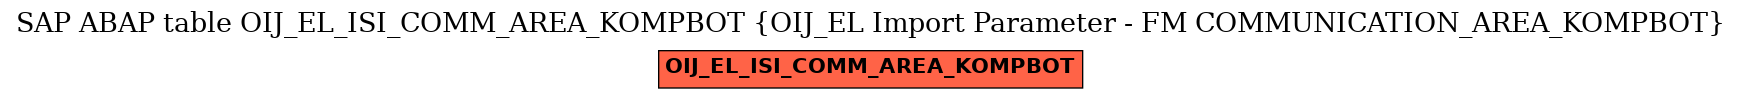 E-R Diagram for table OIJ_EL_ISI_COMM_AREA_KOMPBOT (OIJ_EL Import Parameter - FM COMMUNICATION_AREA_KOMPBOT)